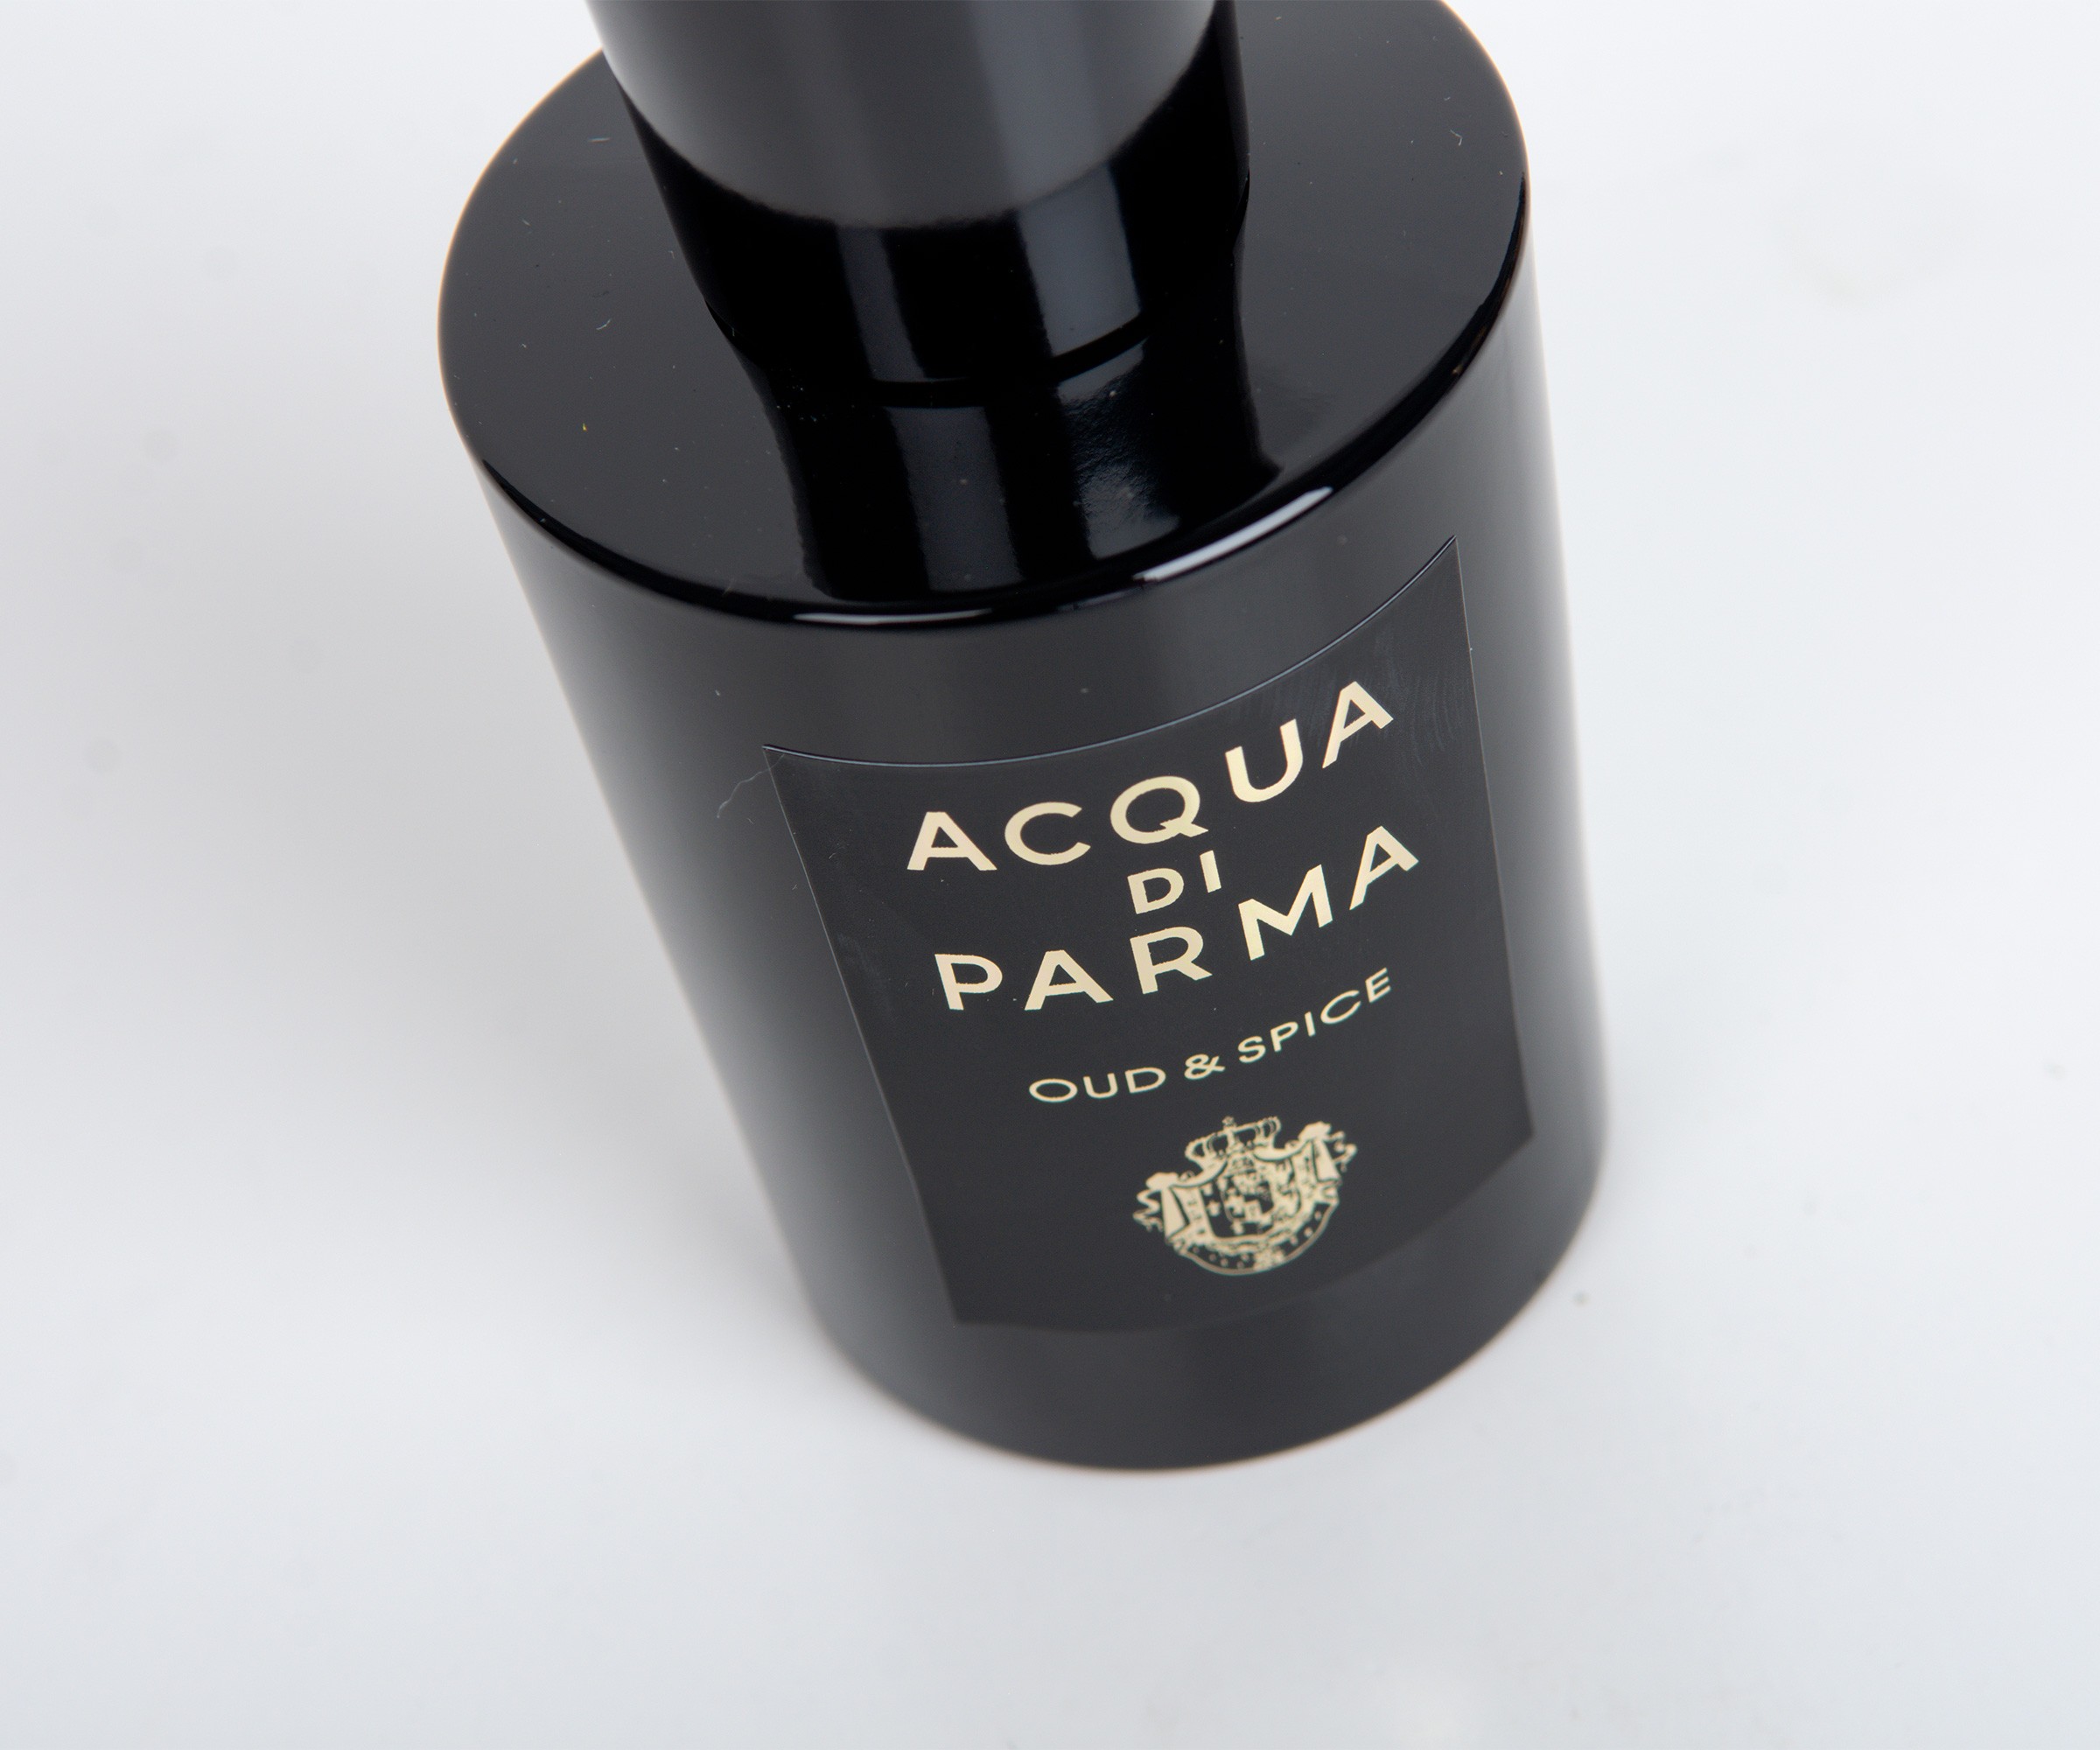 Acqua di Parma - Oud & Spice Eau de Parfum 3.4 oz.